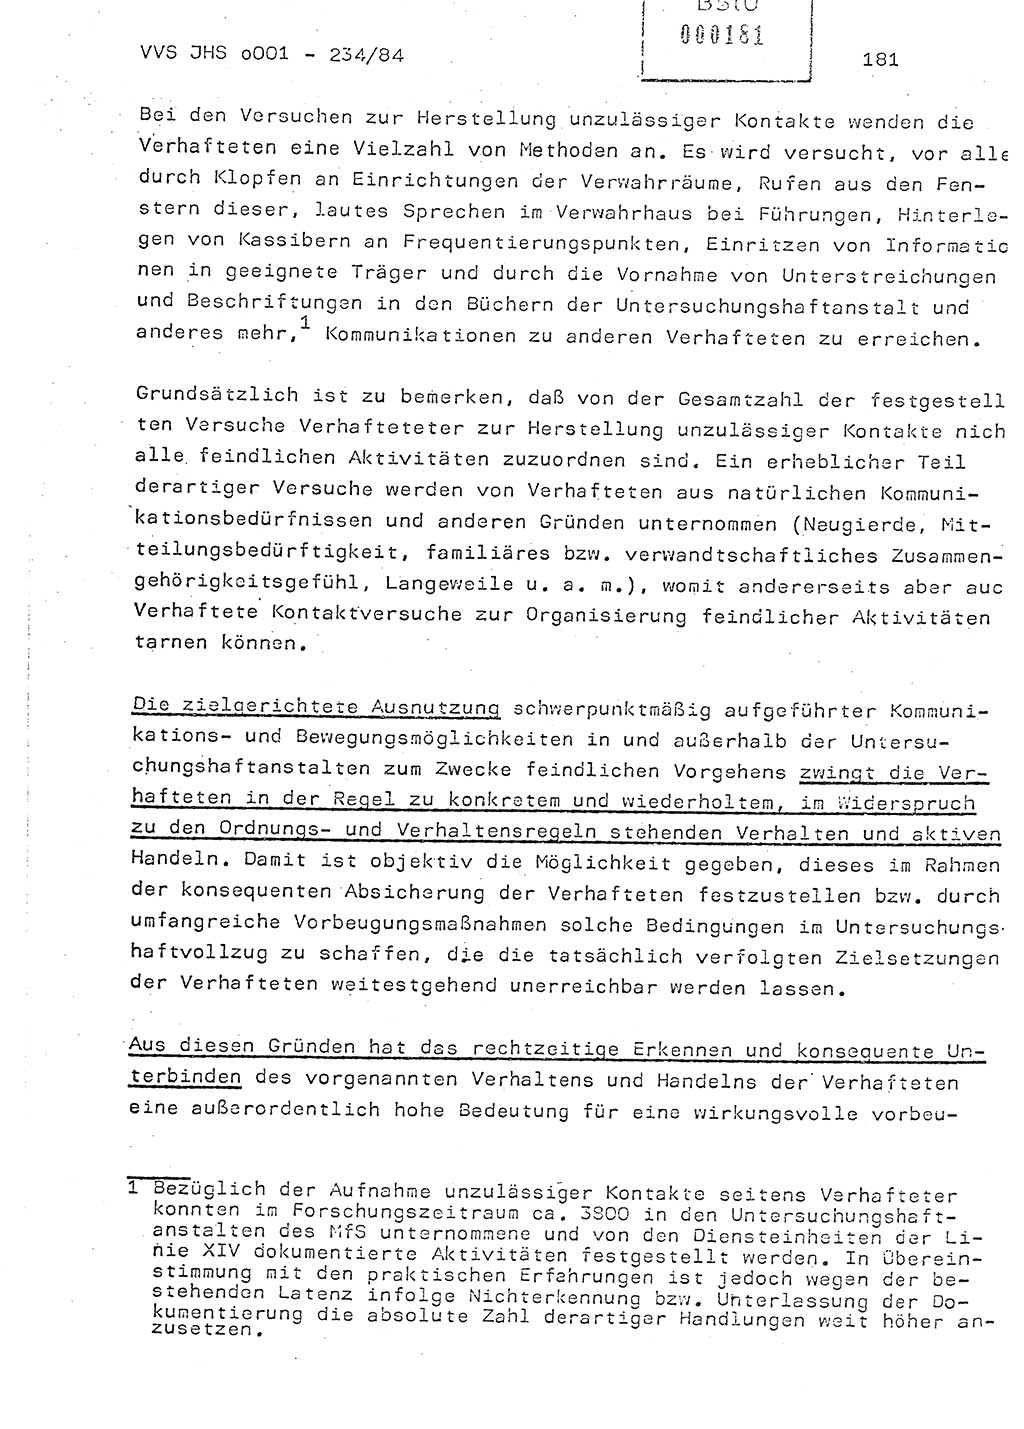 Dissertation Oberst Siegfried Rataizick (Abt. ⅩⅣ), Oberstleutnant Volkmar Heinz (Abt. ⅩⅣ), Oberstleutnant Werner Stein (HA Ⅸ), Hauptmann Heinz Conrad (JHS), Ministerium für Staatssicherheit (MfS) [Deutsche Demokratische Republik (DDR)], Juristische Hochschule (JHS), Vertrauliche Verschlußsache (VVS) o001-234/84, Potsdam 1984, Seite 181 (Diss. MfS DDR JHS VVS o001-234/84 1984, S. 181)